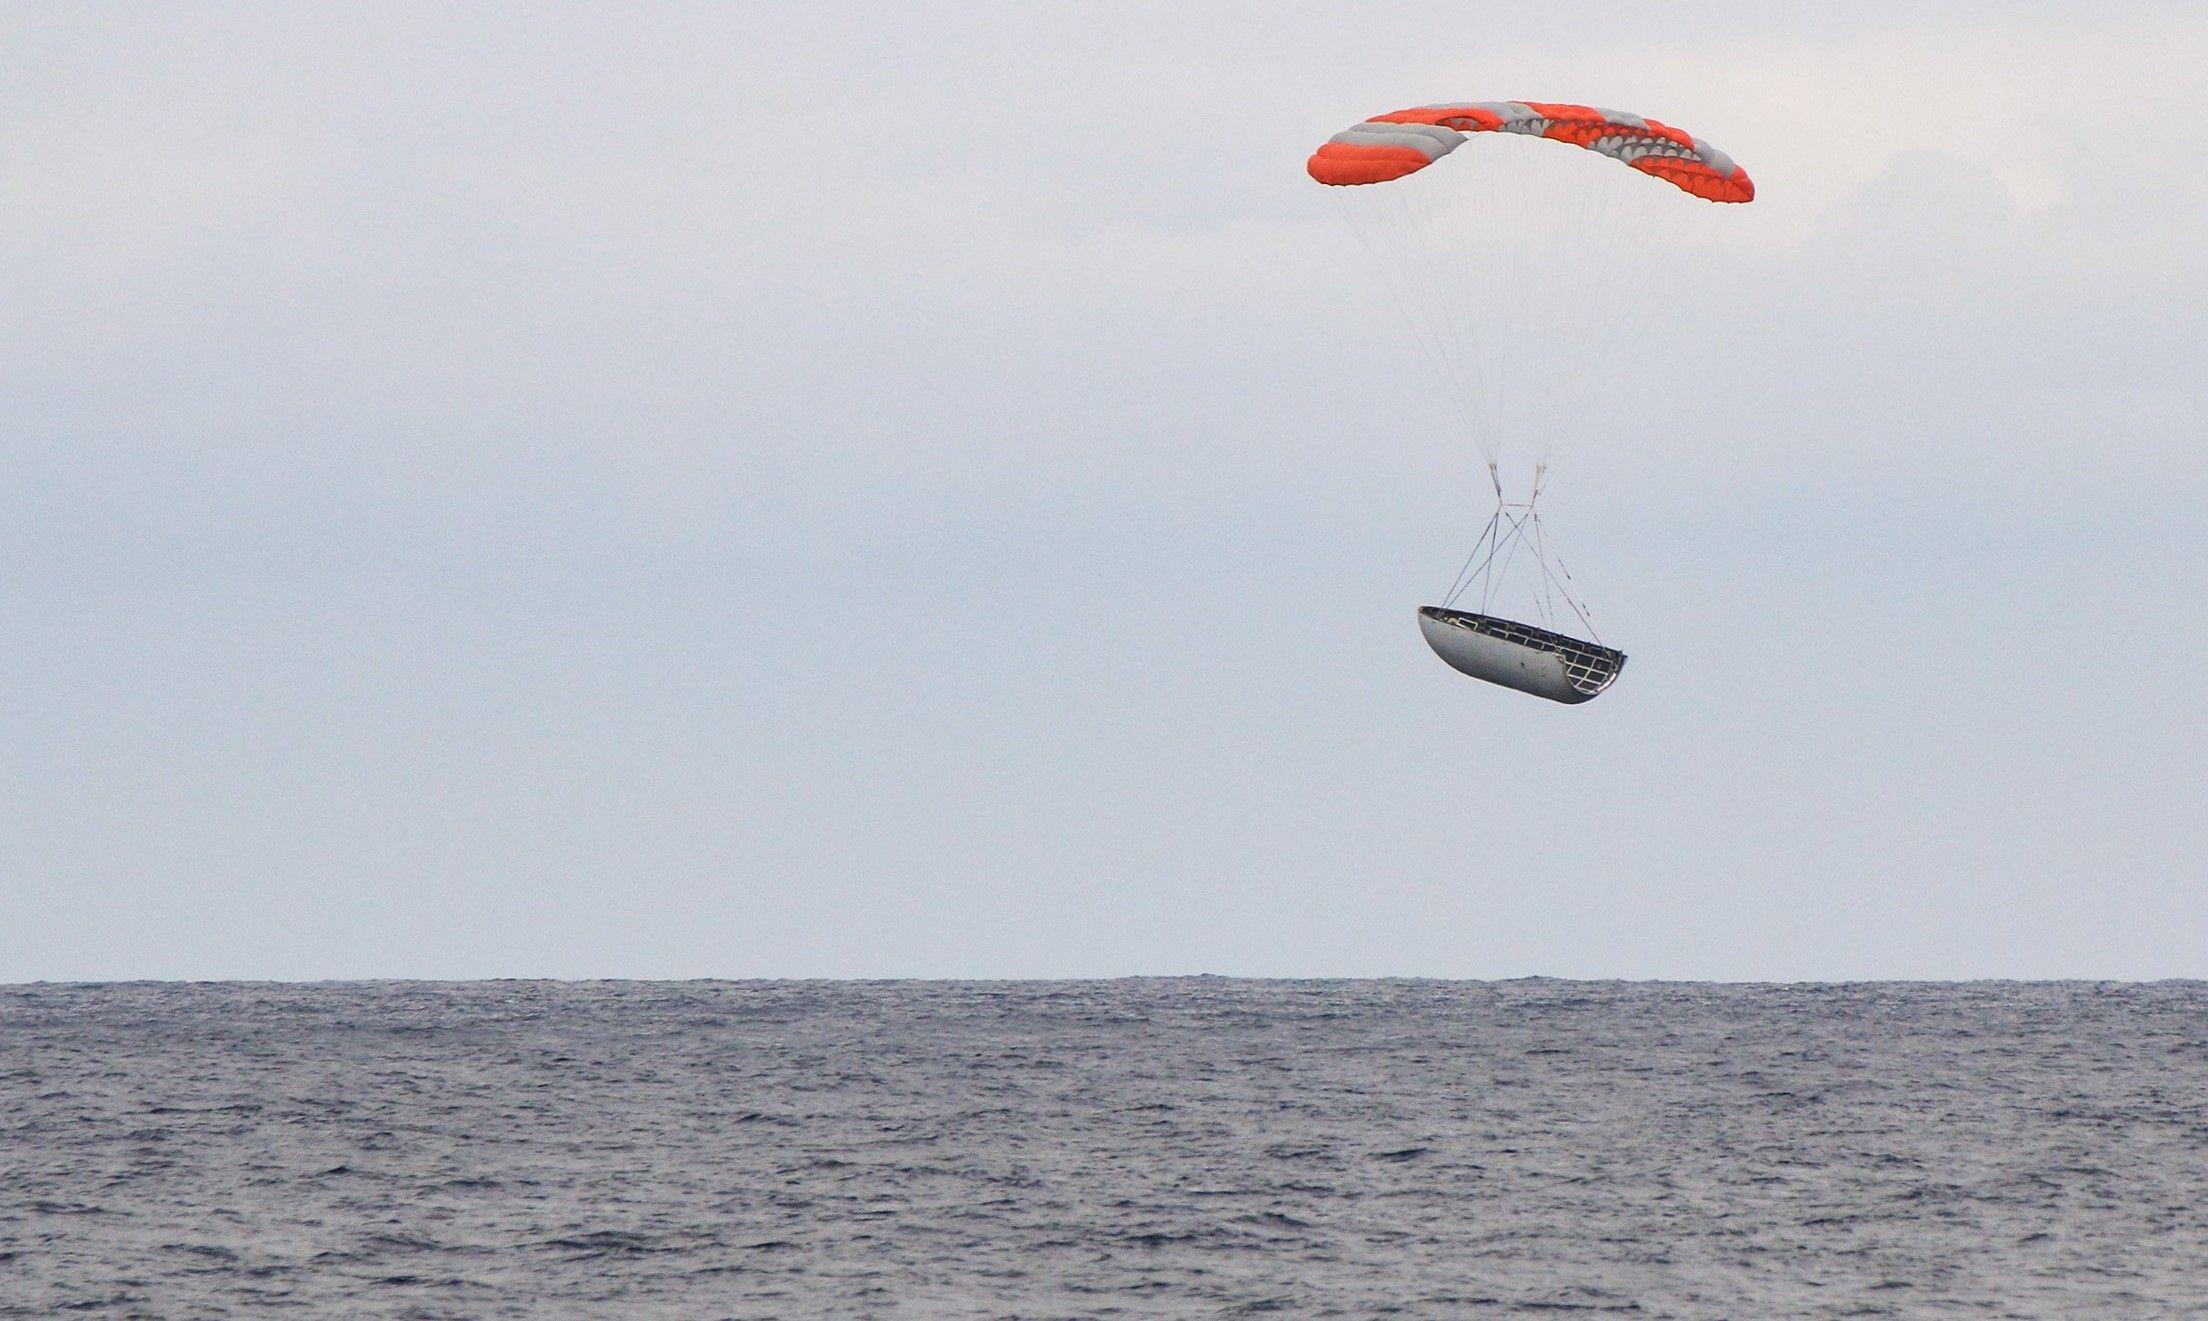 SpaceX Fairing Logo - SpaceX photos reveal Falcon 9 fairings parasailing to Pacific splashdown